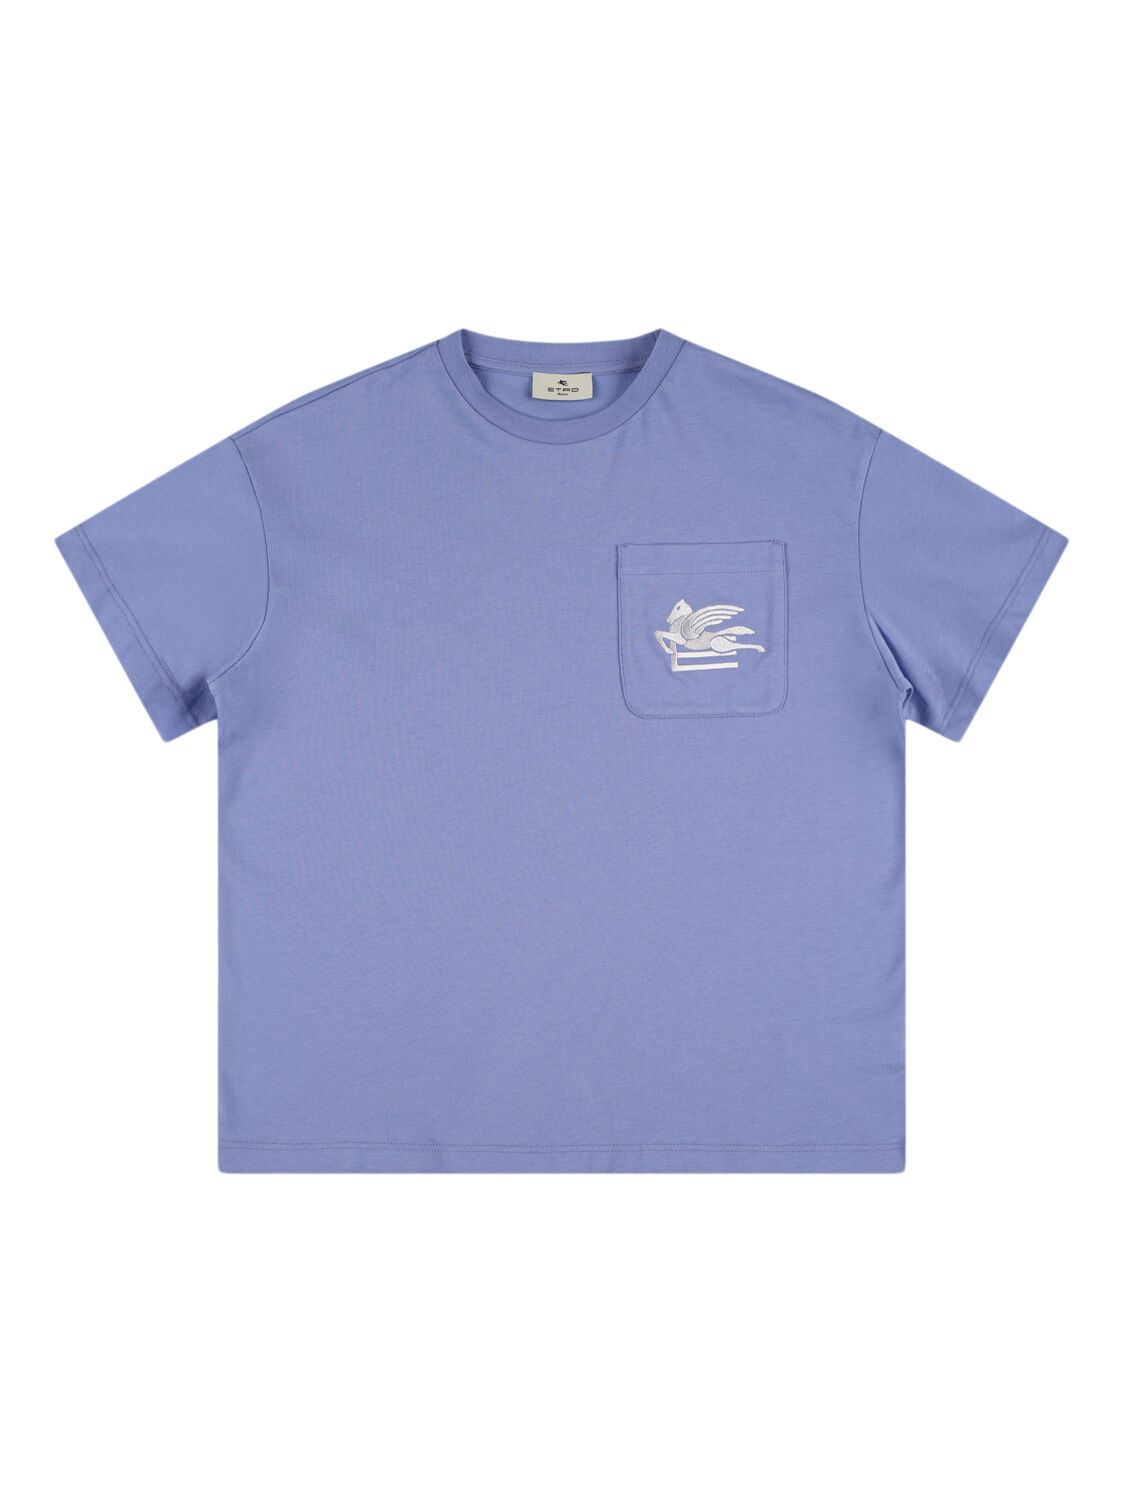 Etro Kids' Cotton Jersey Logo T-shirt In Metallic